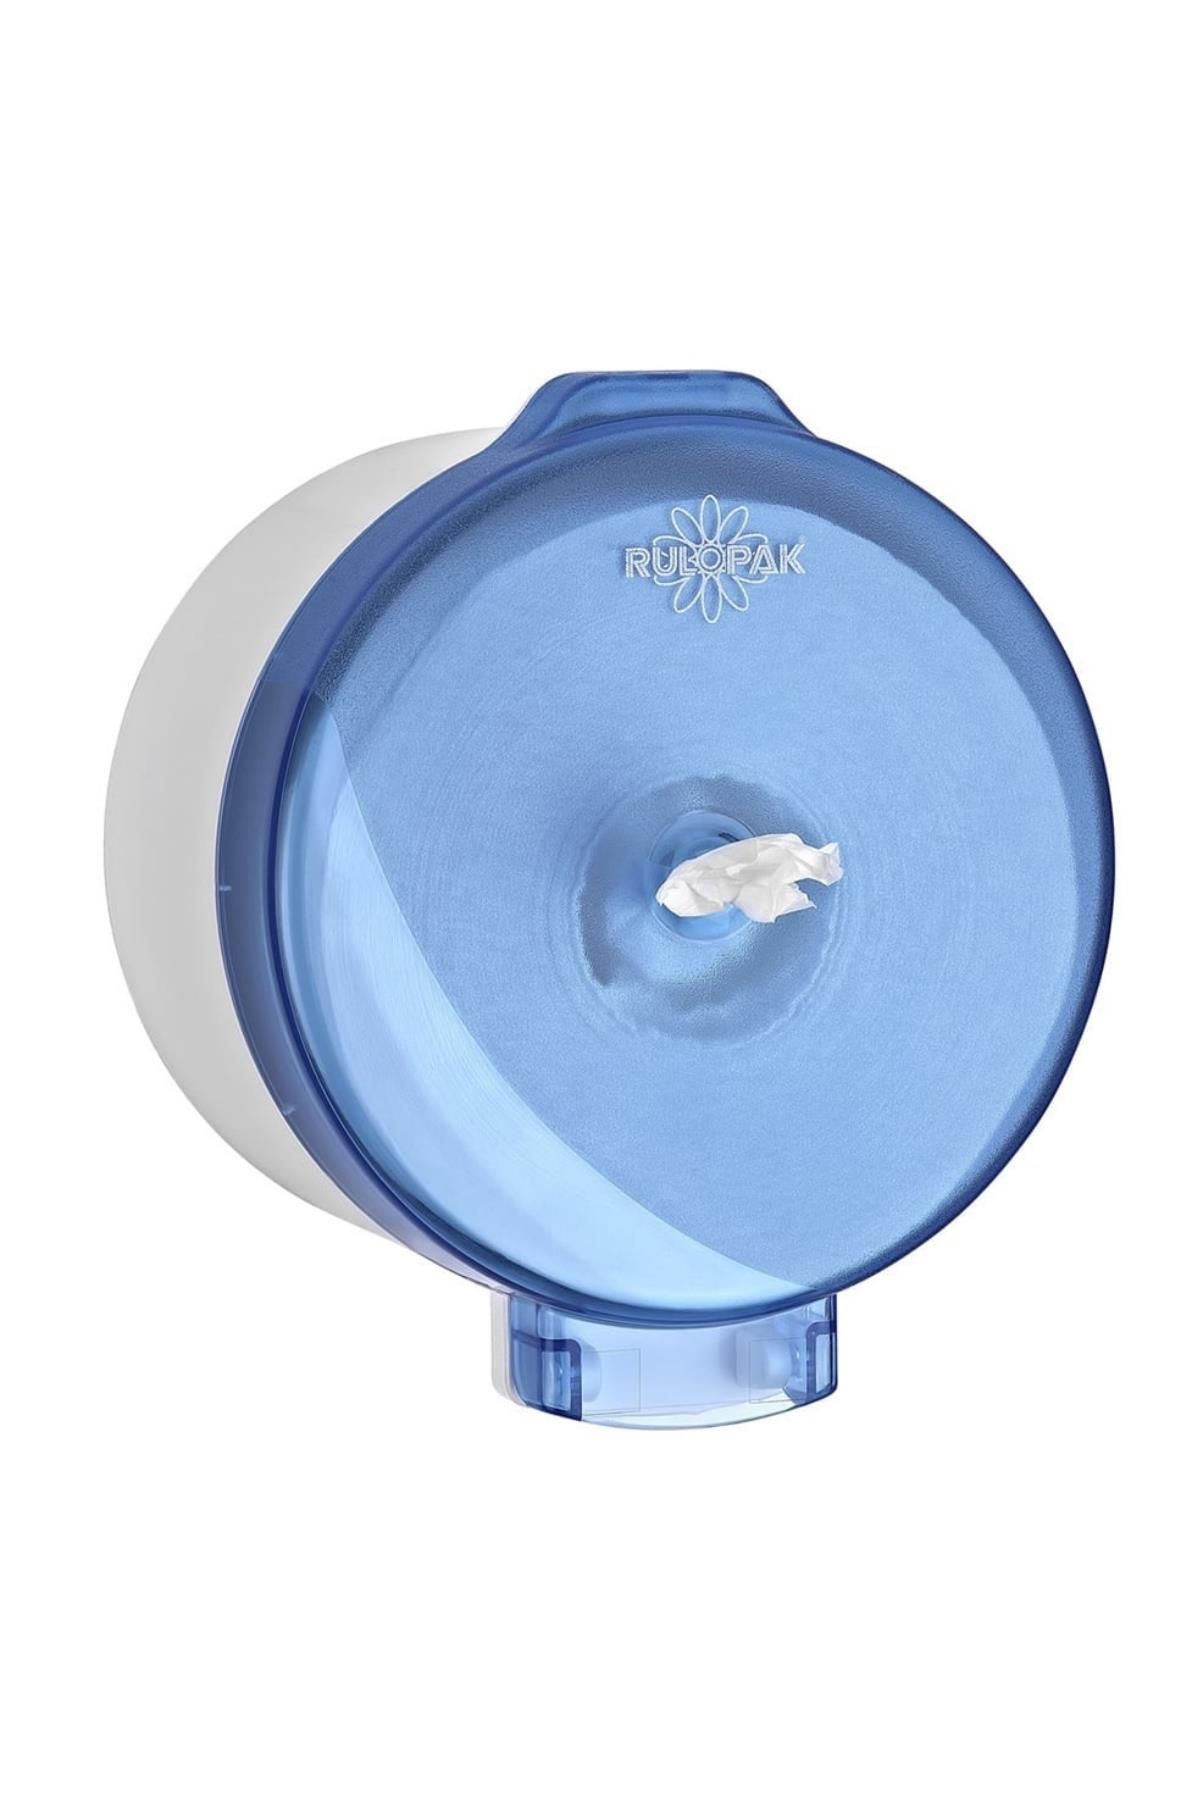 Rulopak Modern Cimri İçten Çekmeli Tuvalet Kağıdı Dispenseri Transparan Mavi